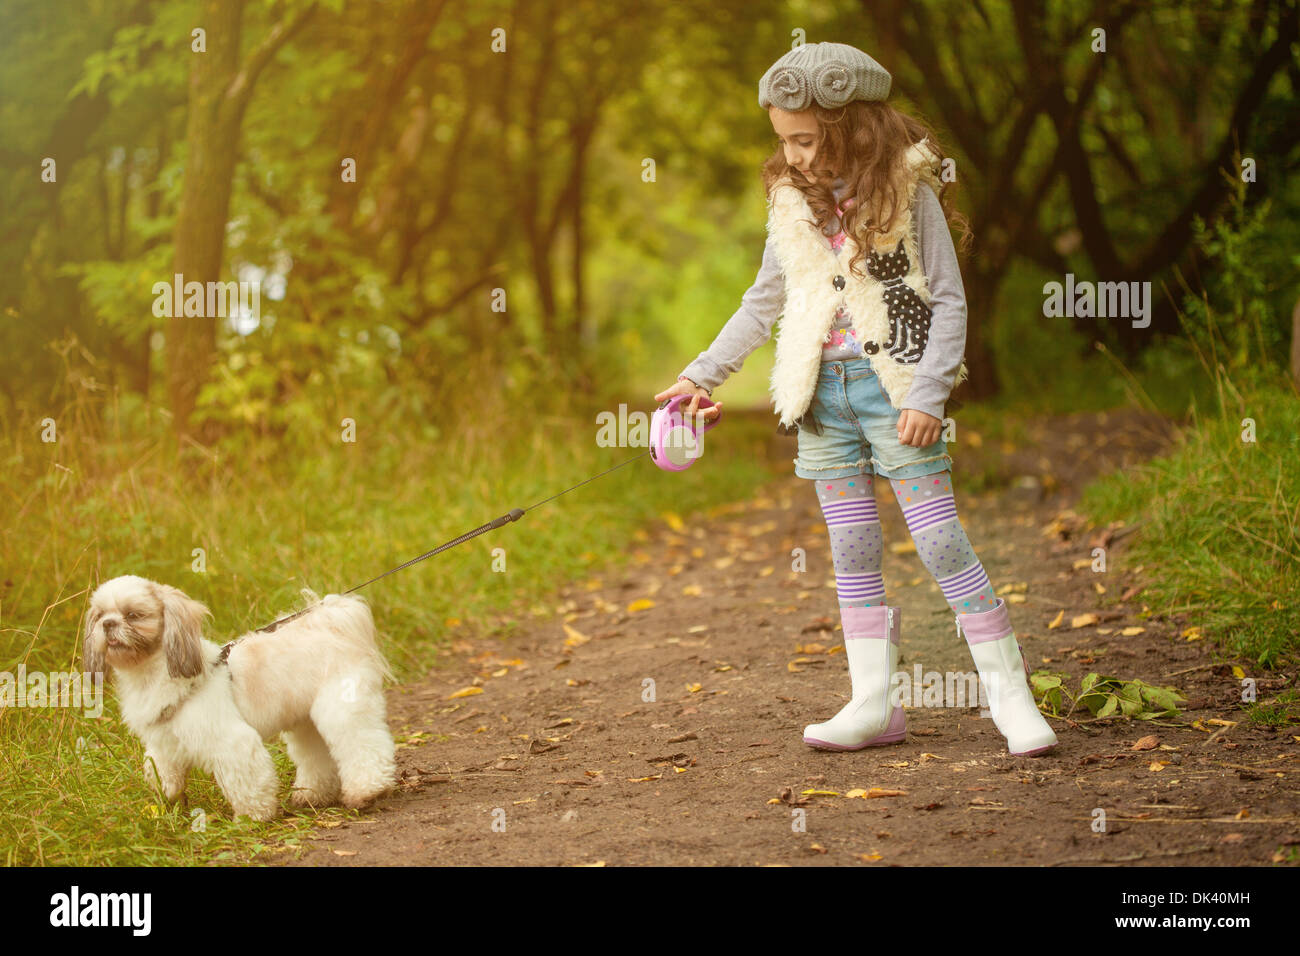 Девочка 12 лет с собакой. Девочка на прогулке. Девочка гуляет с собакой. Девочка с собачкой. Девочка гуляет в парке.